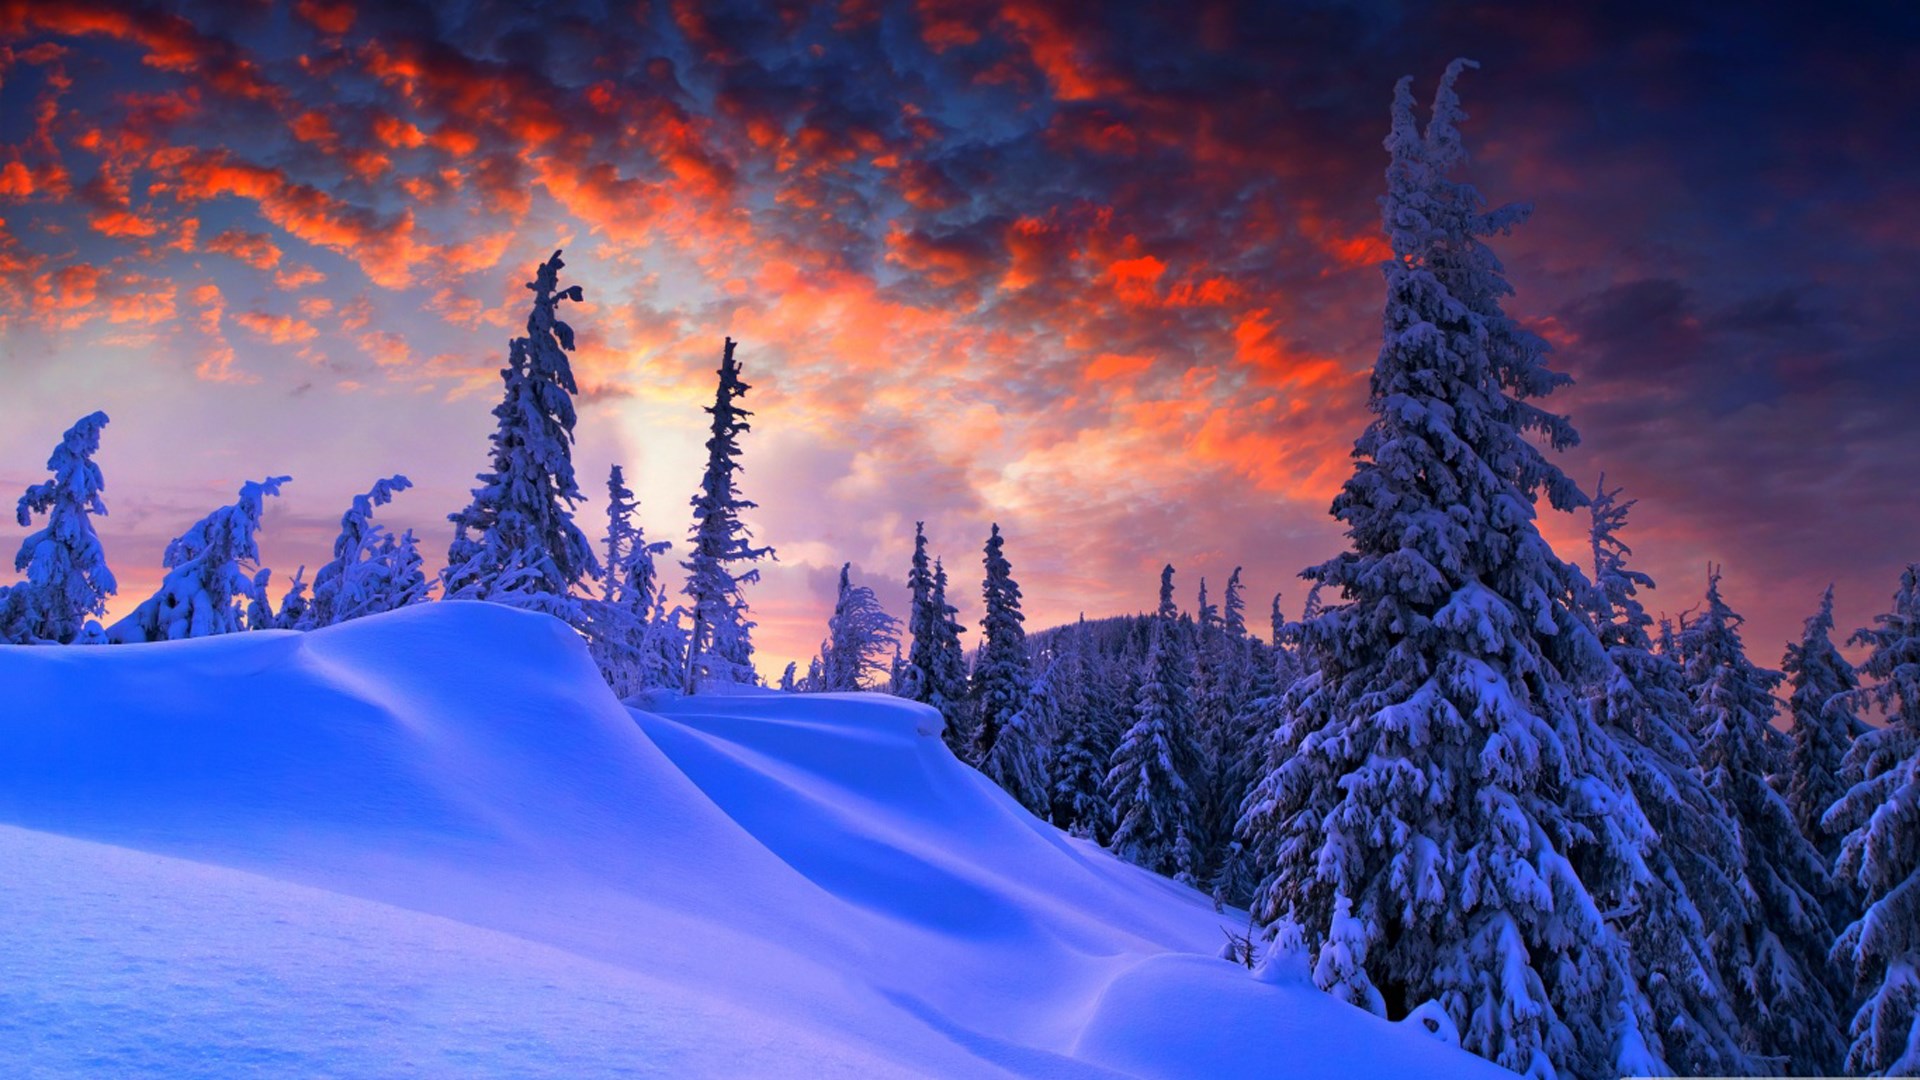 Hình ảnh mùa đông lạnh lẽo nền trời màu lạ